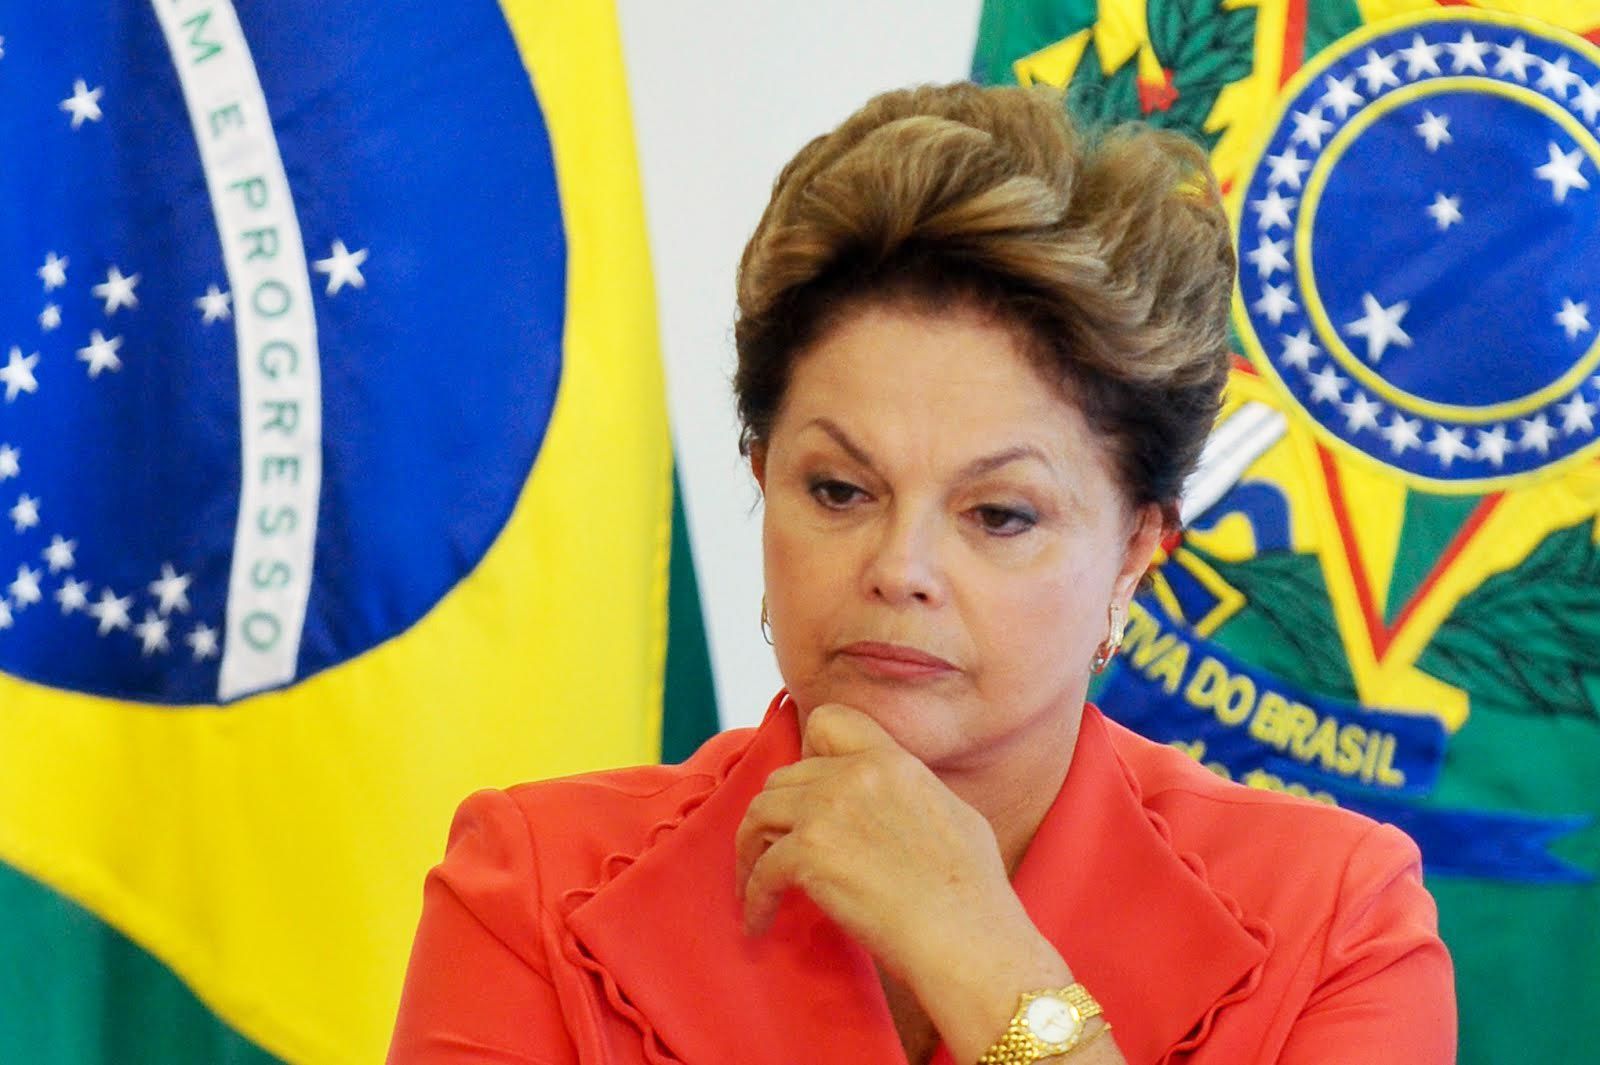 Brasil: Este jueves arranca el juicio político contra Dilma Rousseff